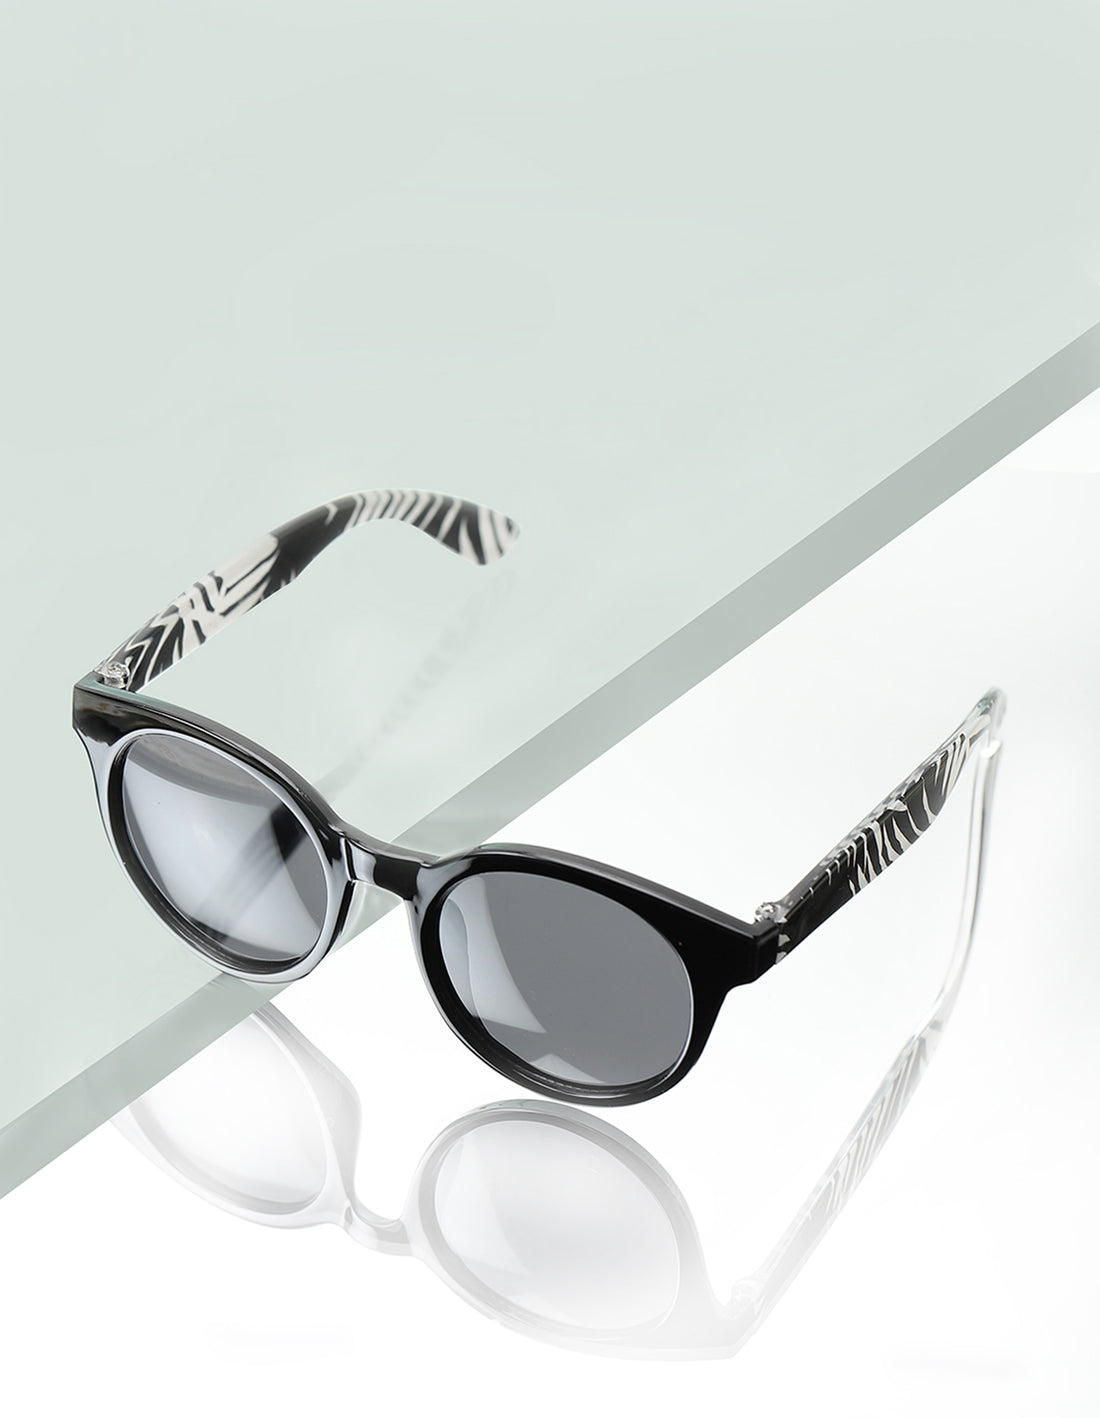 Carlton London Black Lens &amp; Black Cateye Sunglasses For Girl